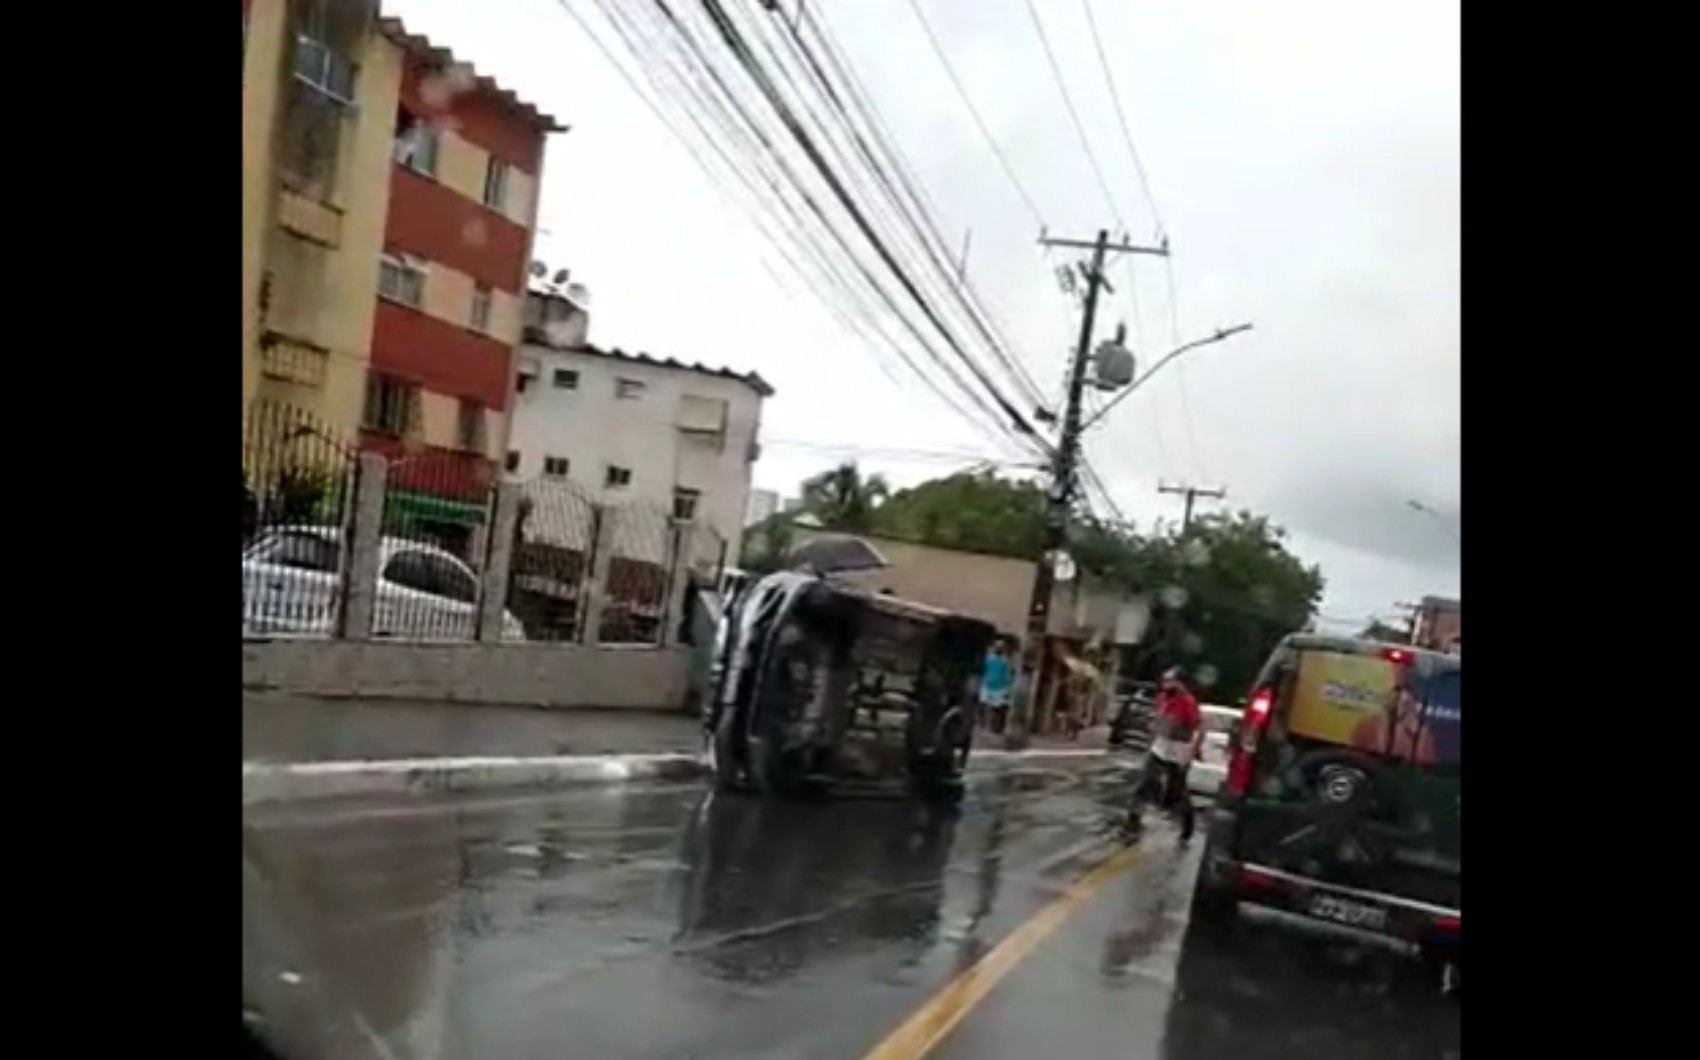 
Batida entre três carros deixa veículo tombado na Ladeira do Saboeiro, em Salvador